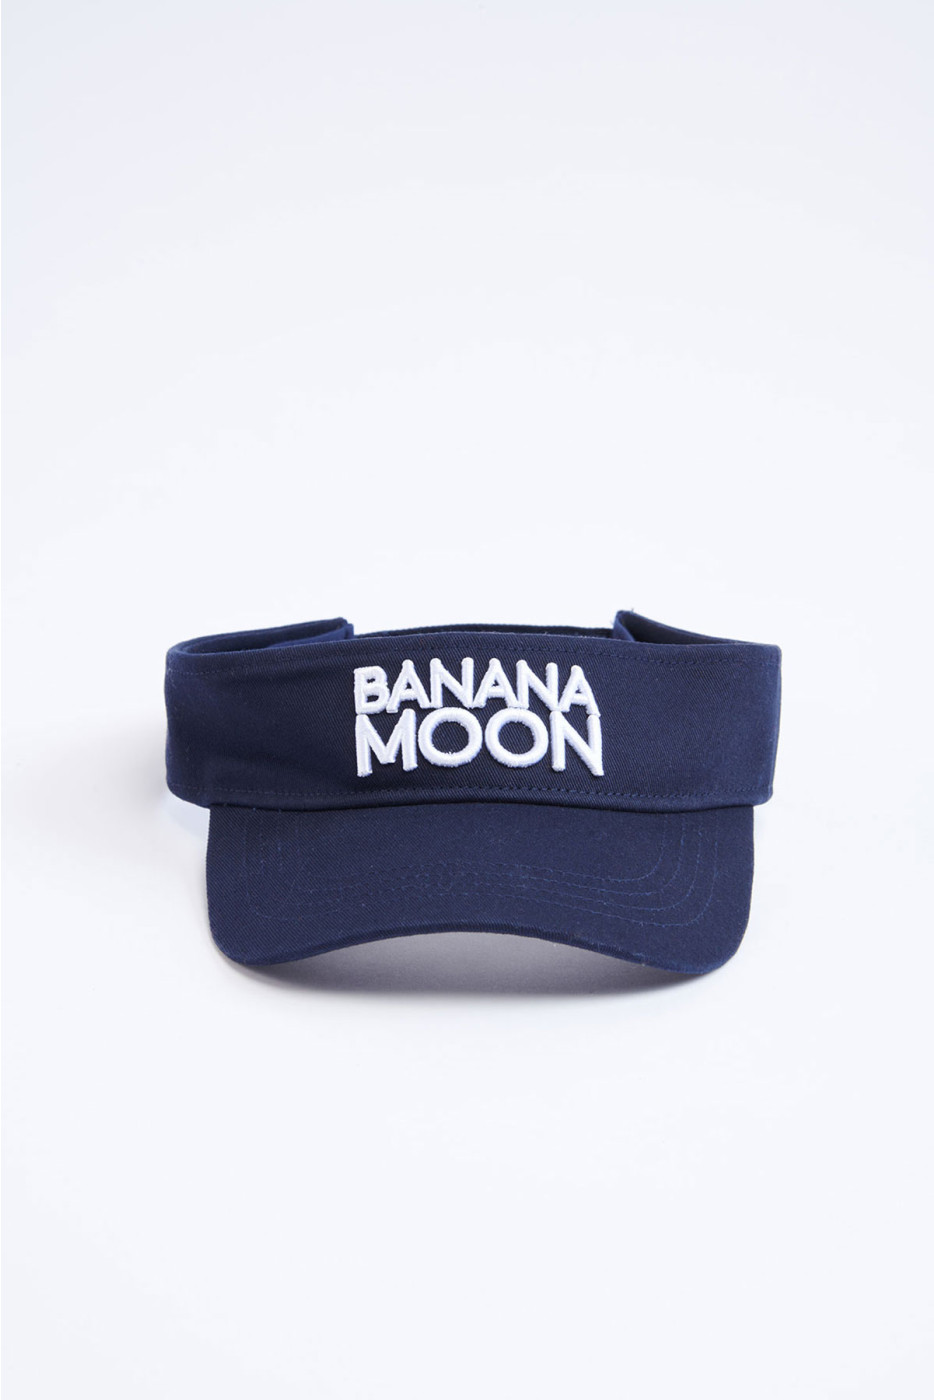 MAFFIN BASICCAP navy blue visor